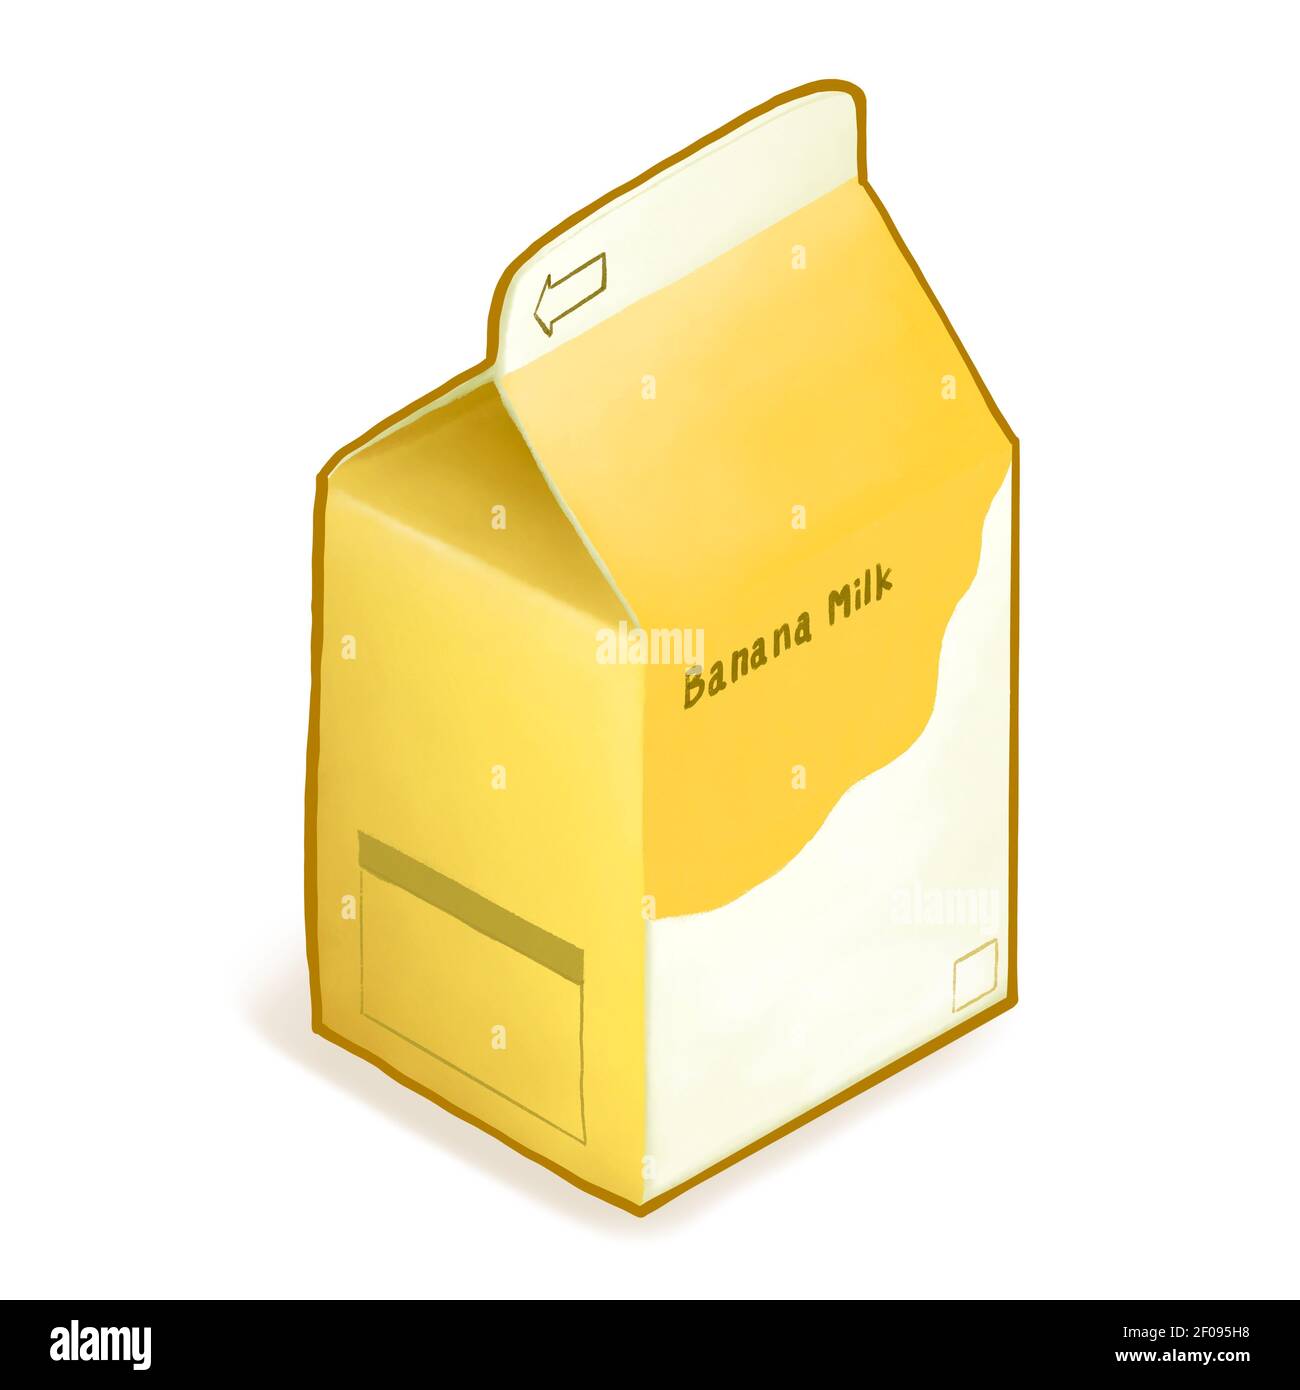 Banana latte drink, un dipinto digitale di giallo scatola di carta confezione di frutta dolce lattiginosa bevanda isometrica cartoon icona raster 3D illustrazione su Whi Foto Stock